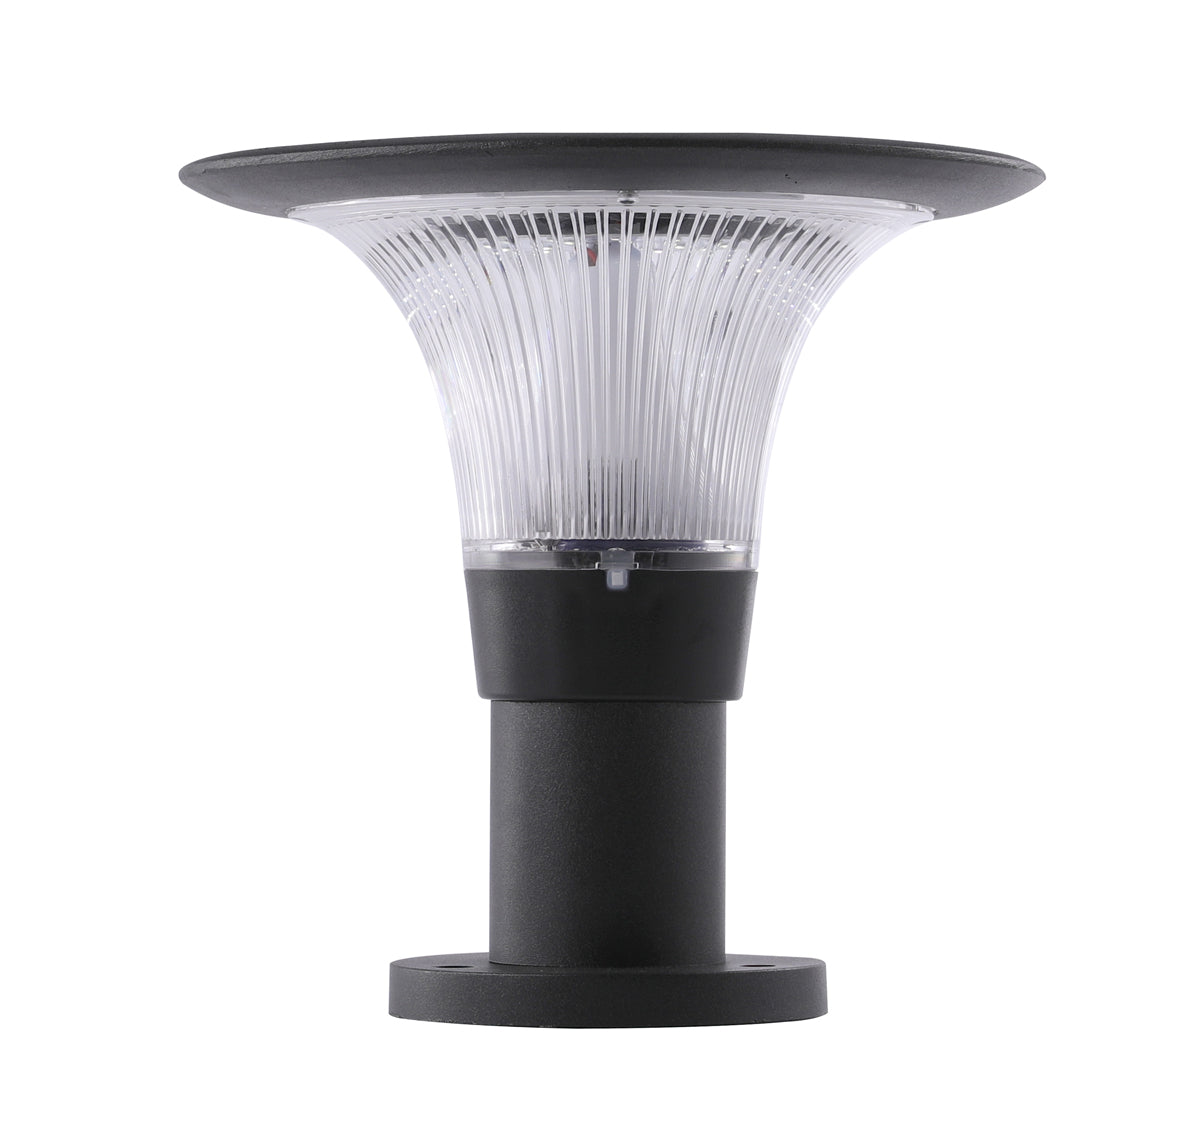 Smarte LED Solarleuchte Gartenleuchte Solarlampe Gartenlampe mit APP-Steuerung